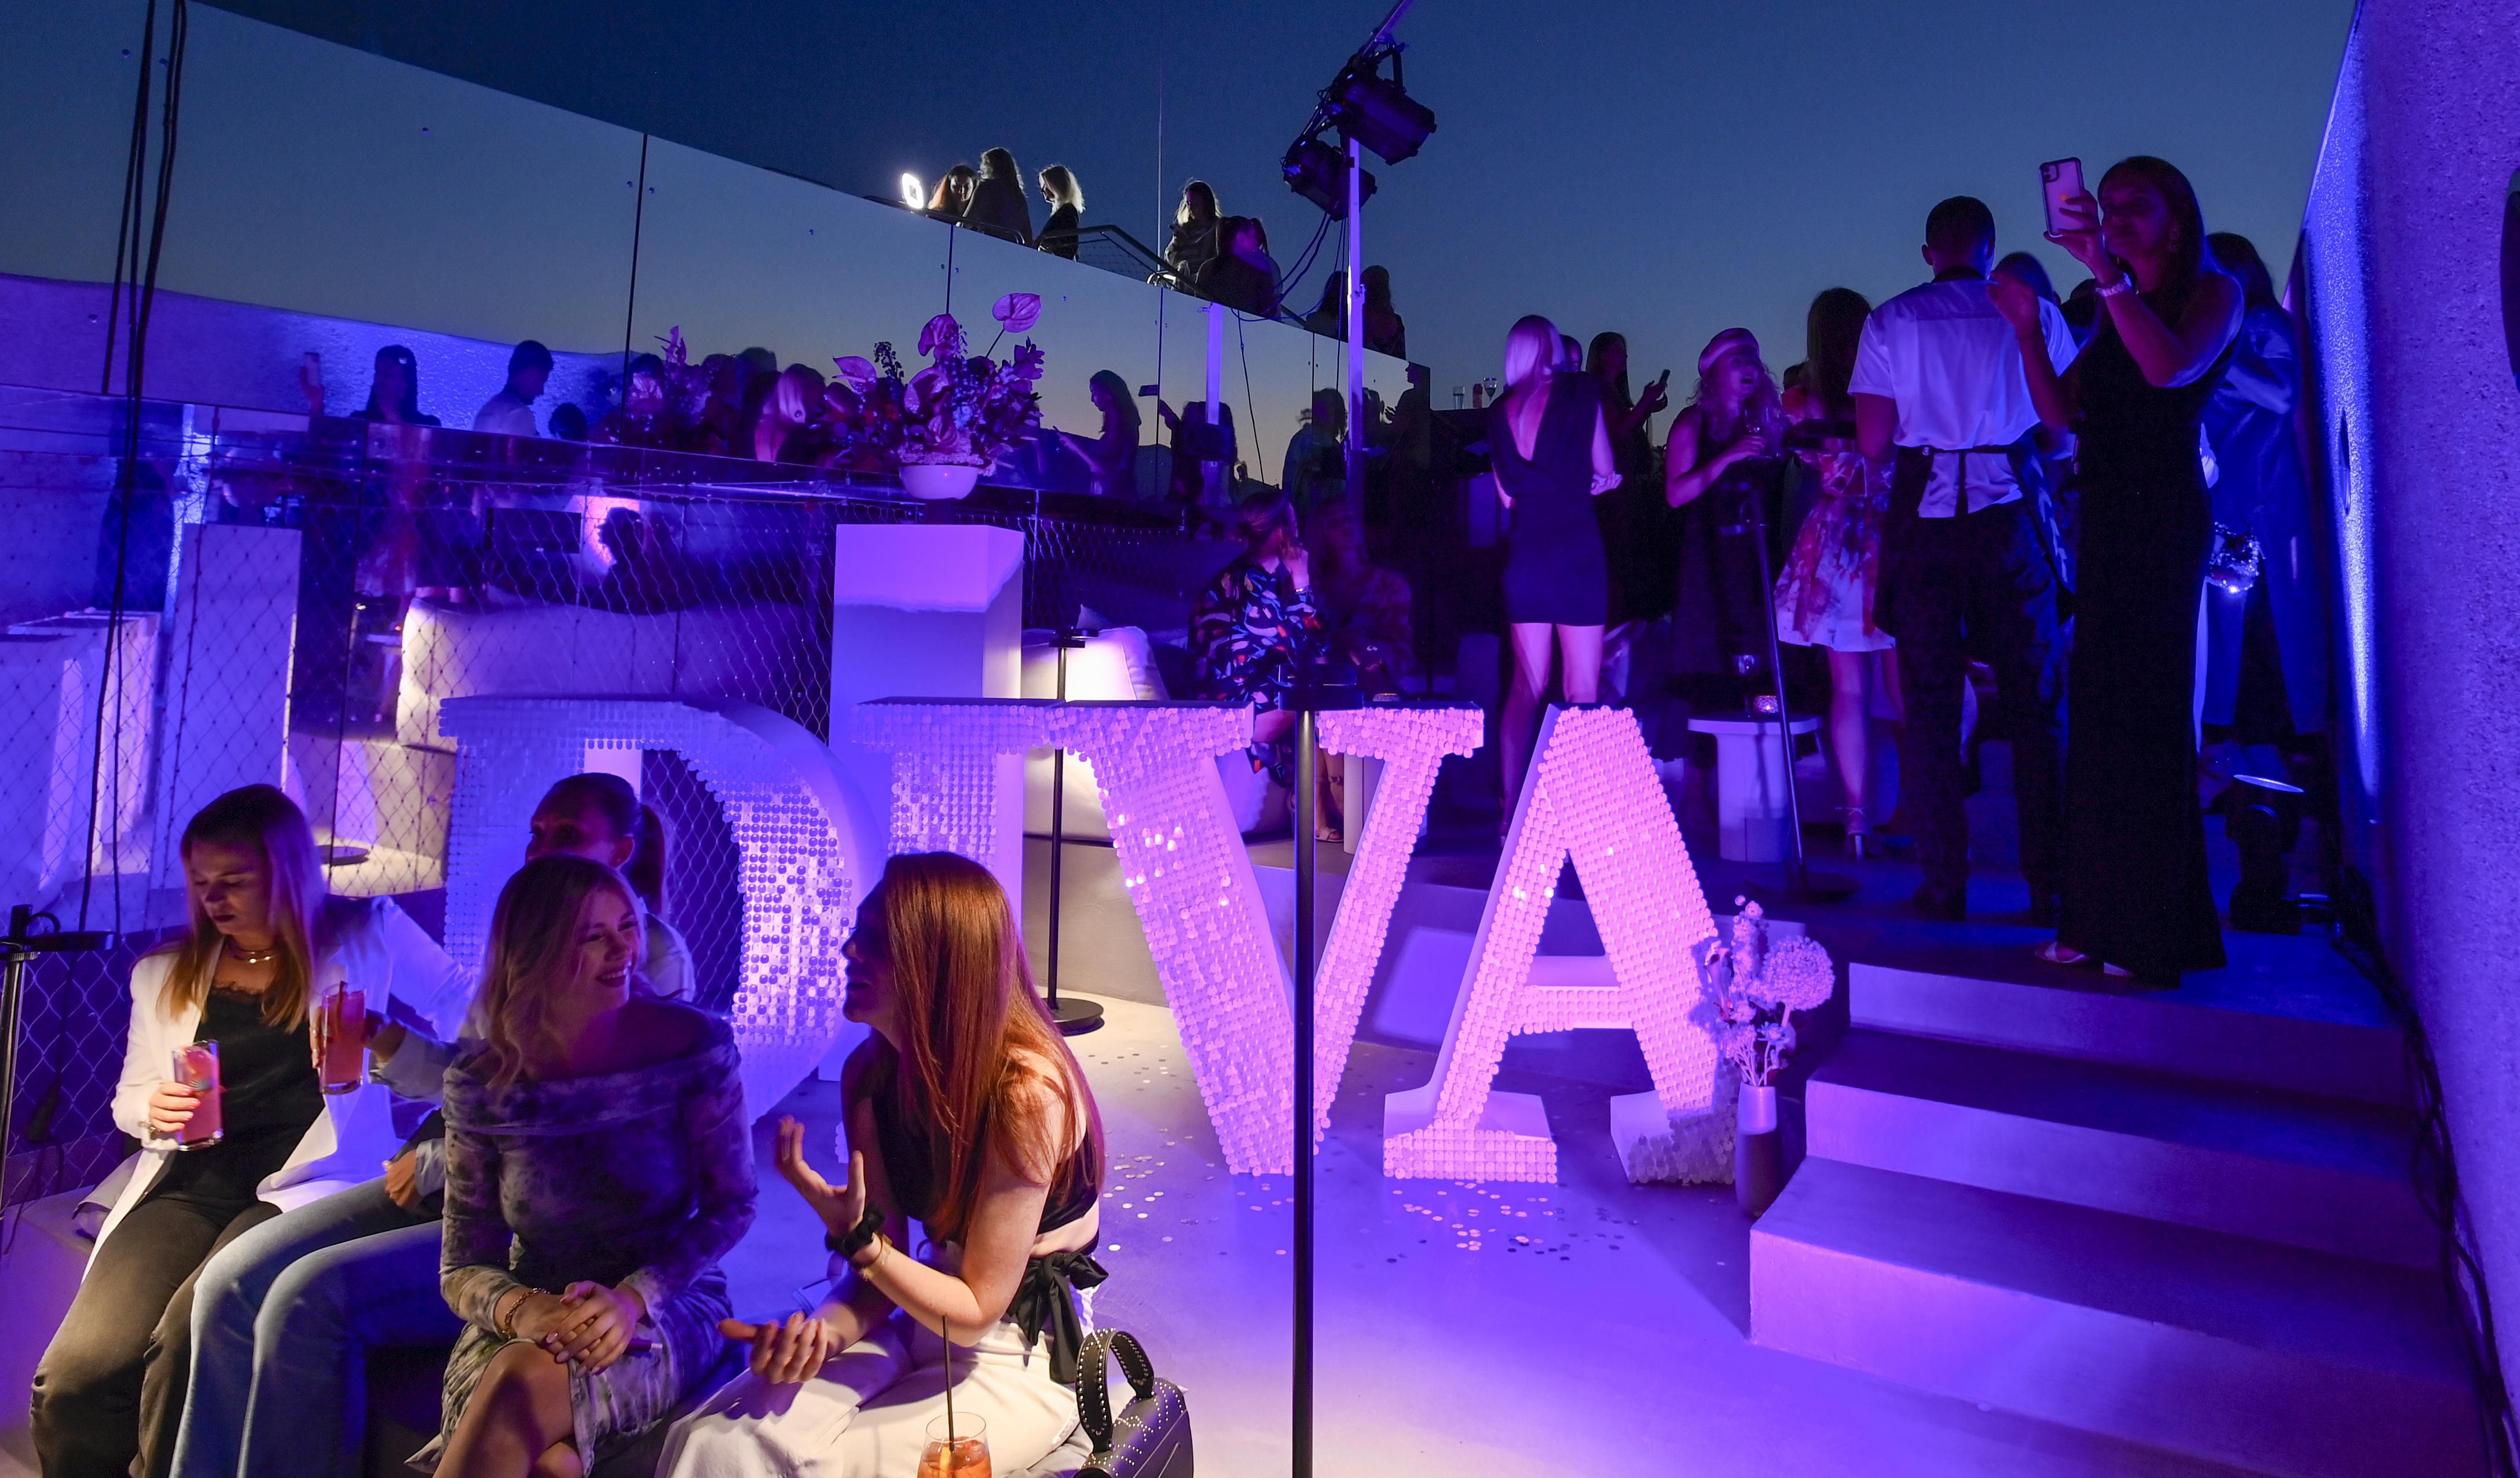 Sjajan događaj za kraj ljeta: Diva Summer party proslavio sezonu odličnom atmosferom pod zvijezdama